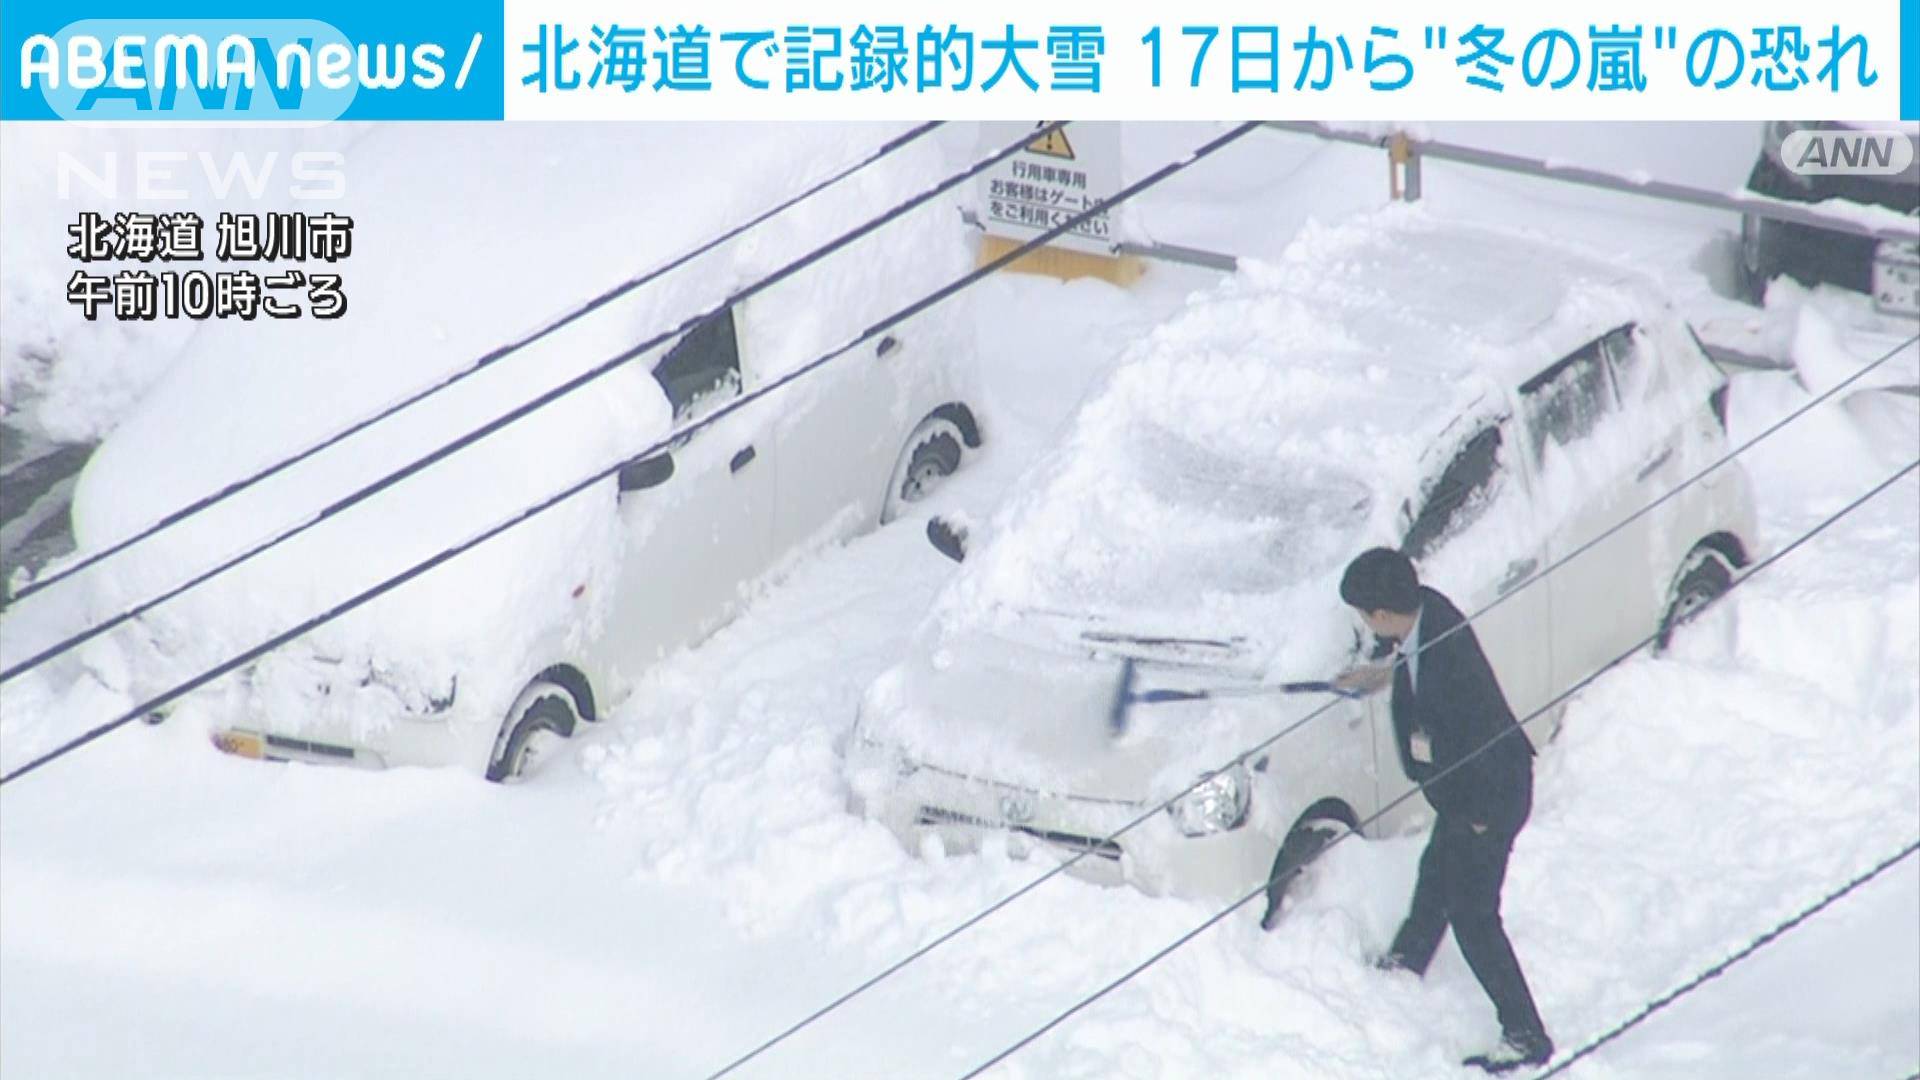 北海道で記録的な大雪 17日以降“冬の嵐”の恐れ